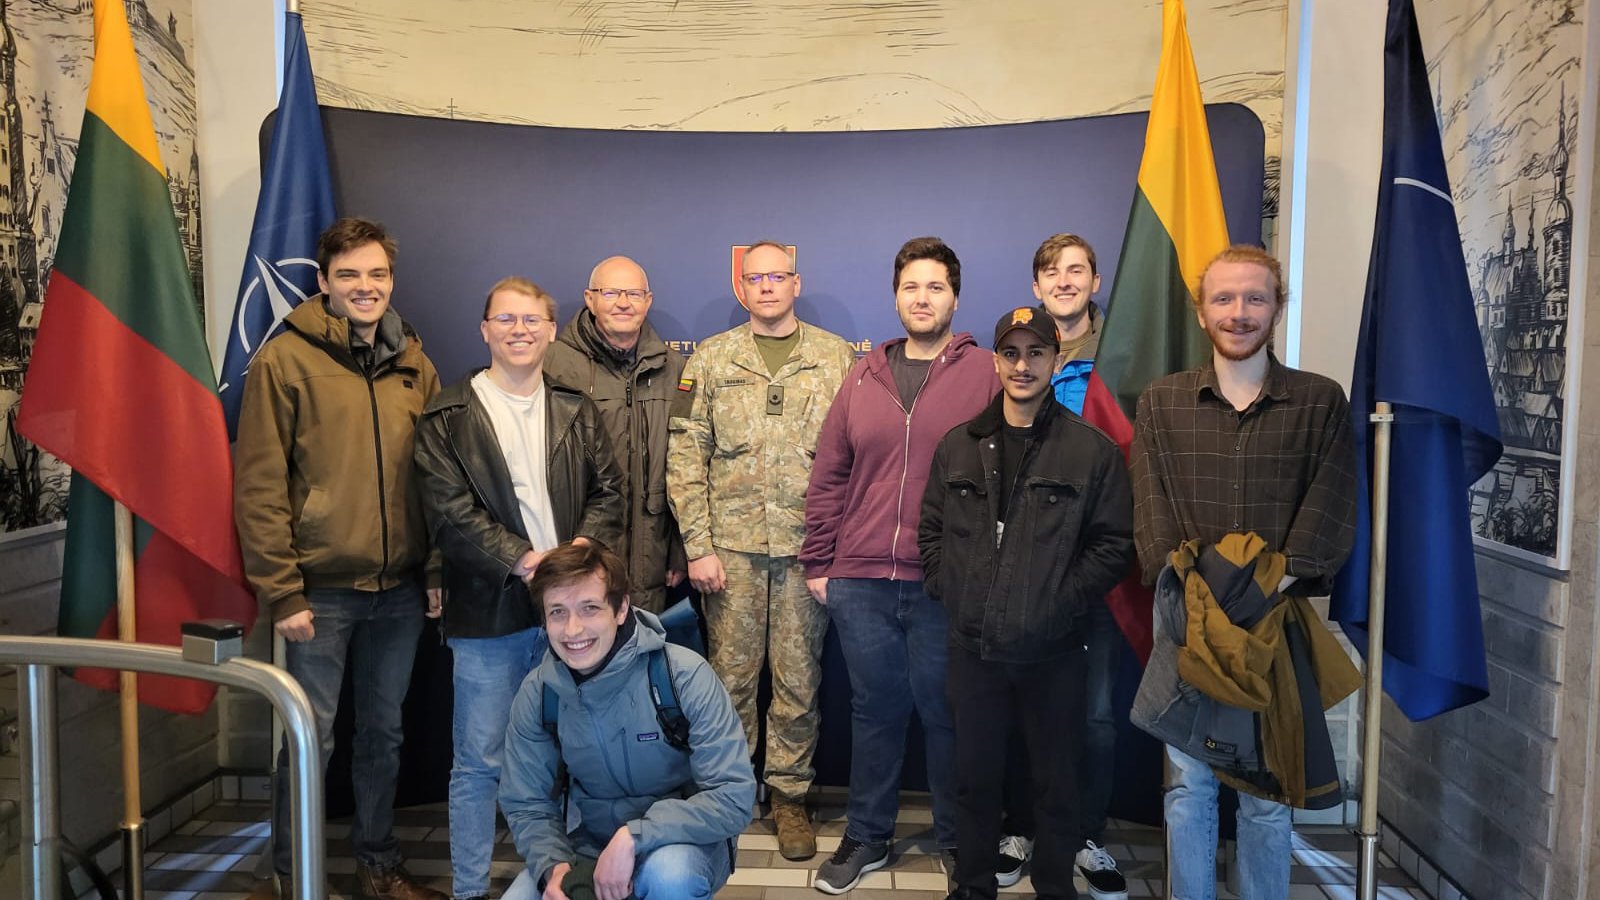 Acht Männer schauen lächelnd in die Kamera, einer von ihnen trägt eine Uniform in Tarnfarben, rechts und links der Gruppe sind litauische Flaggen zu sehen